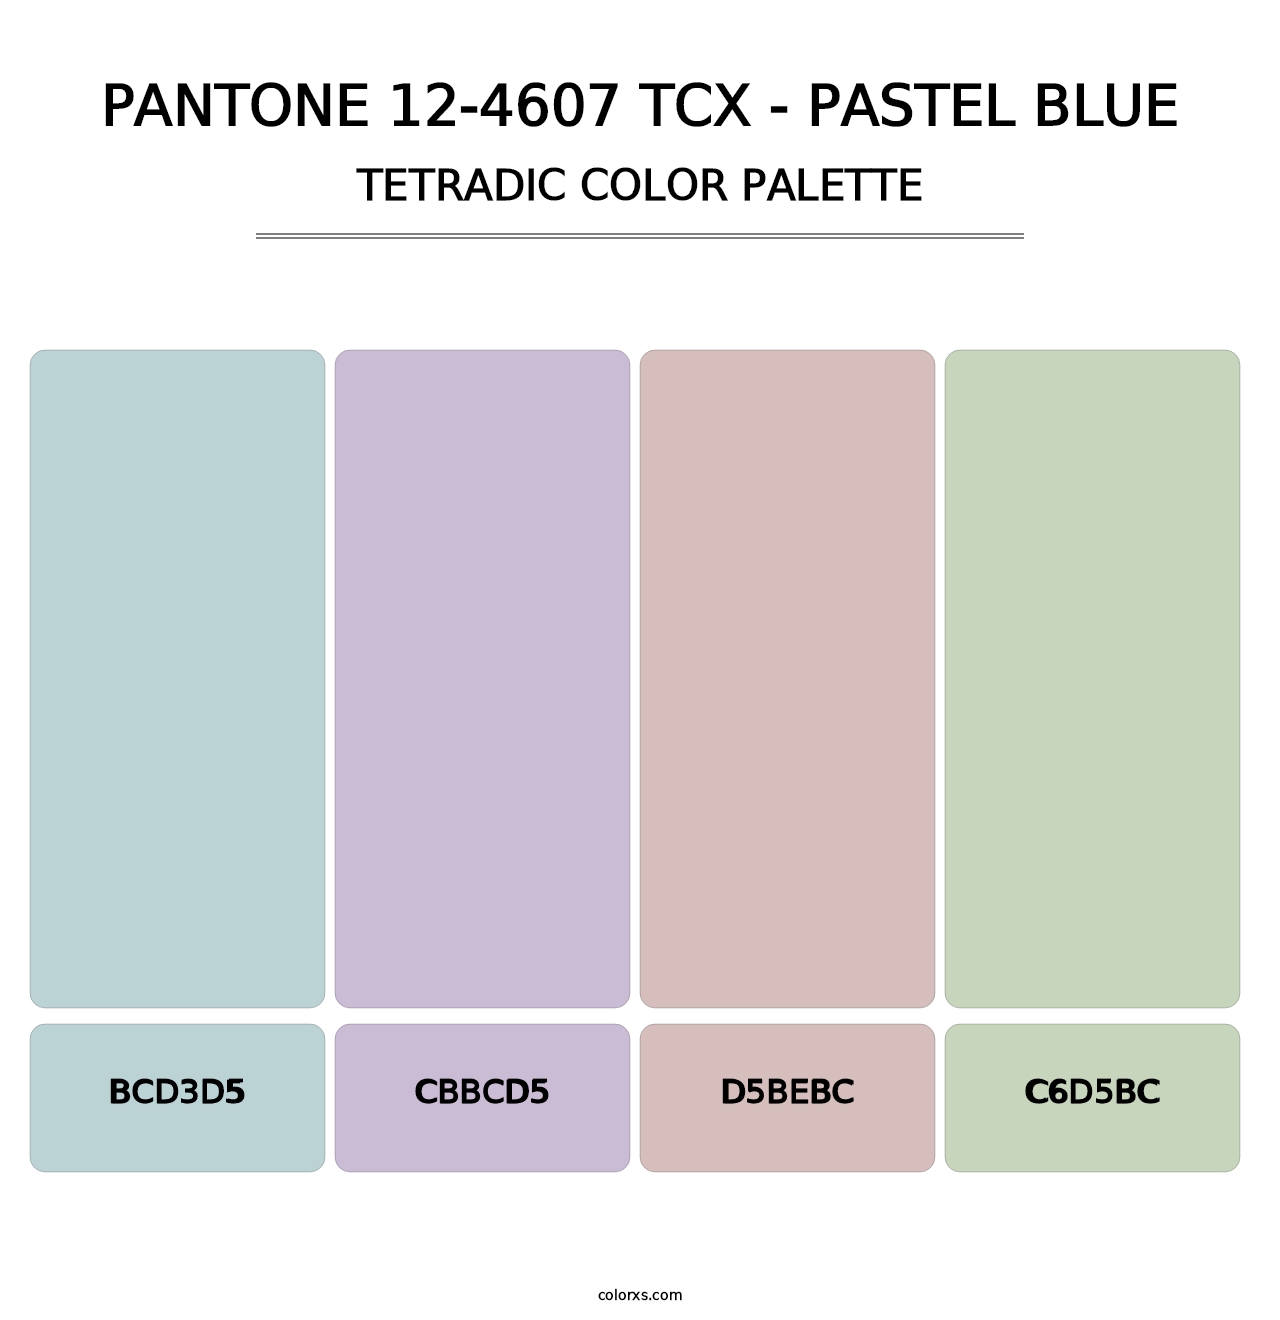 PANTONE 12-4607 TCX - Pastel Blue - Tetradic Color Palette